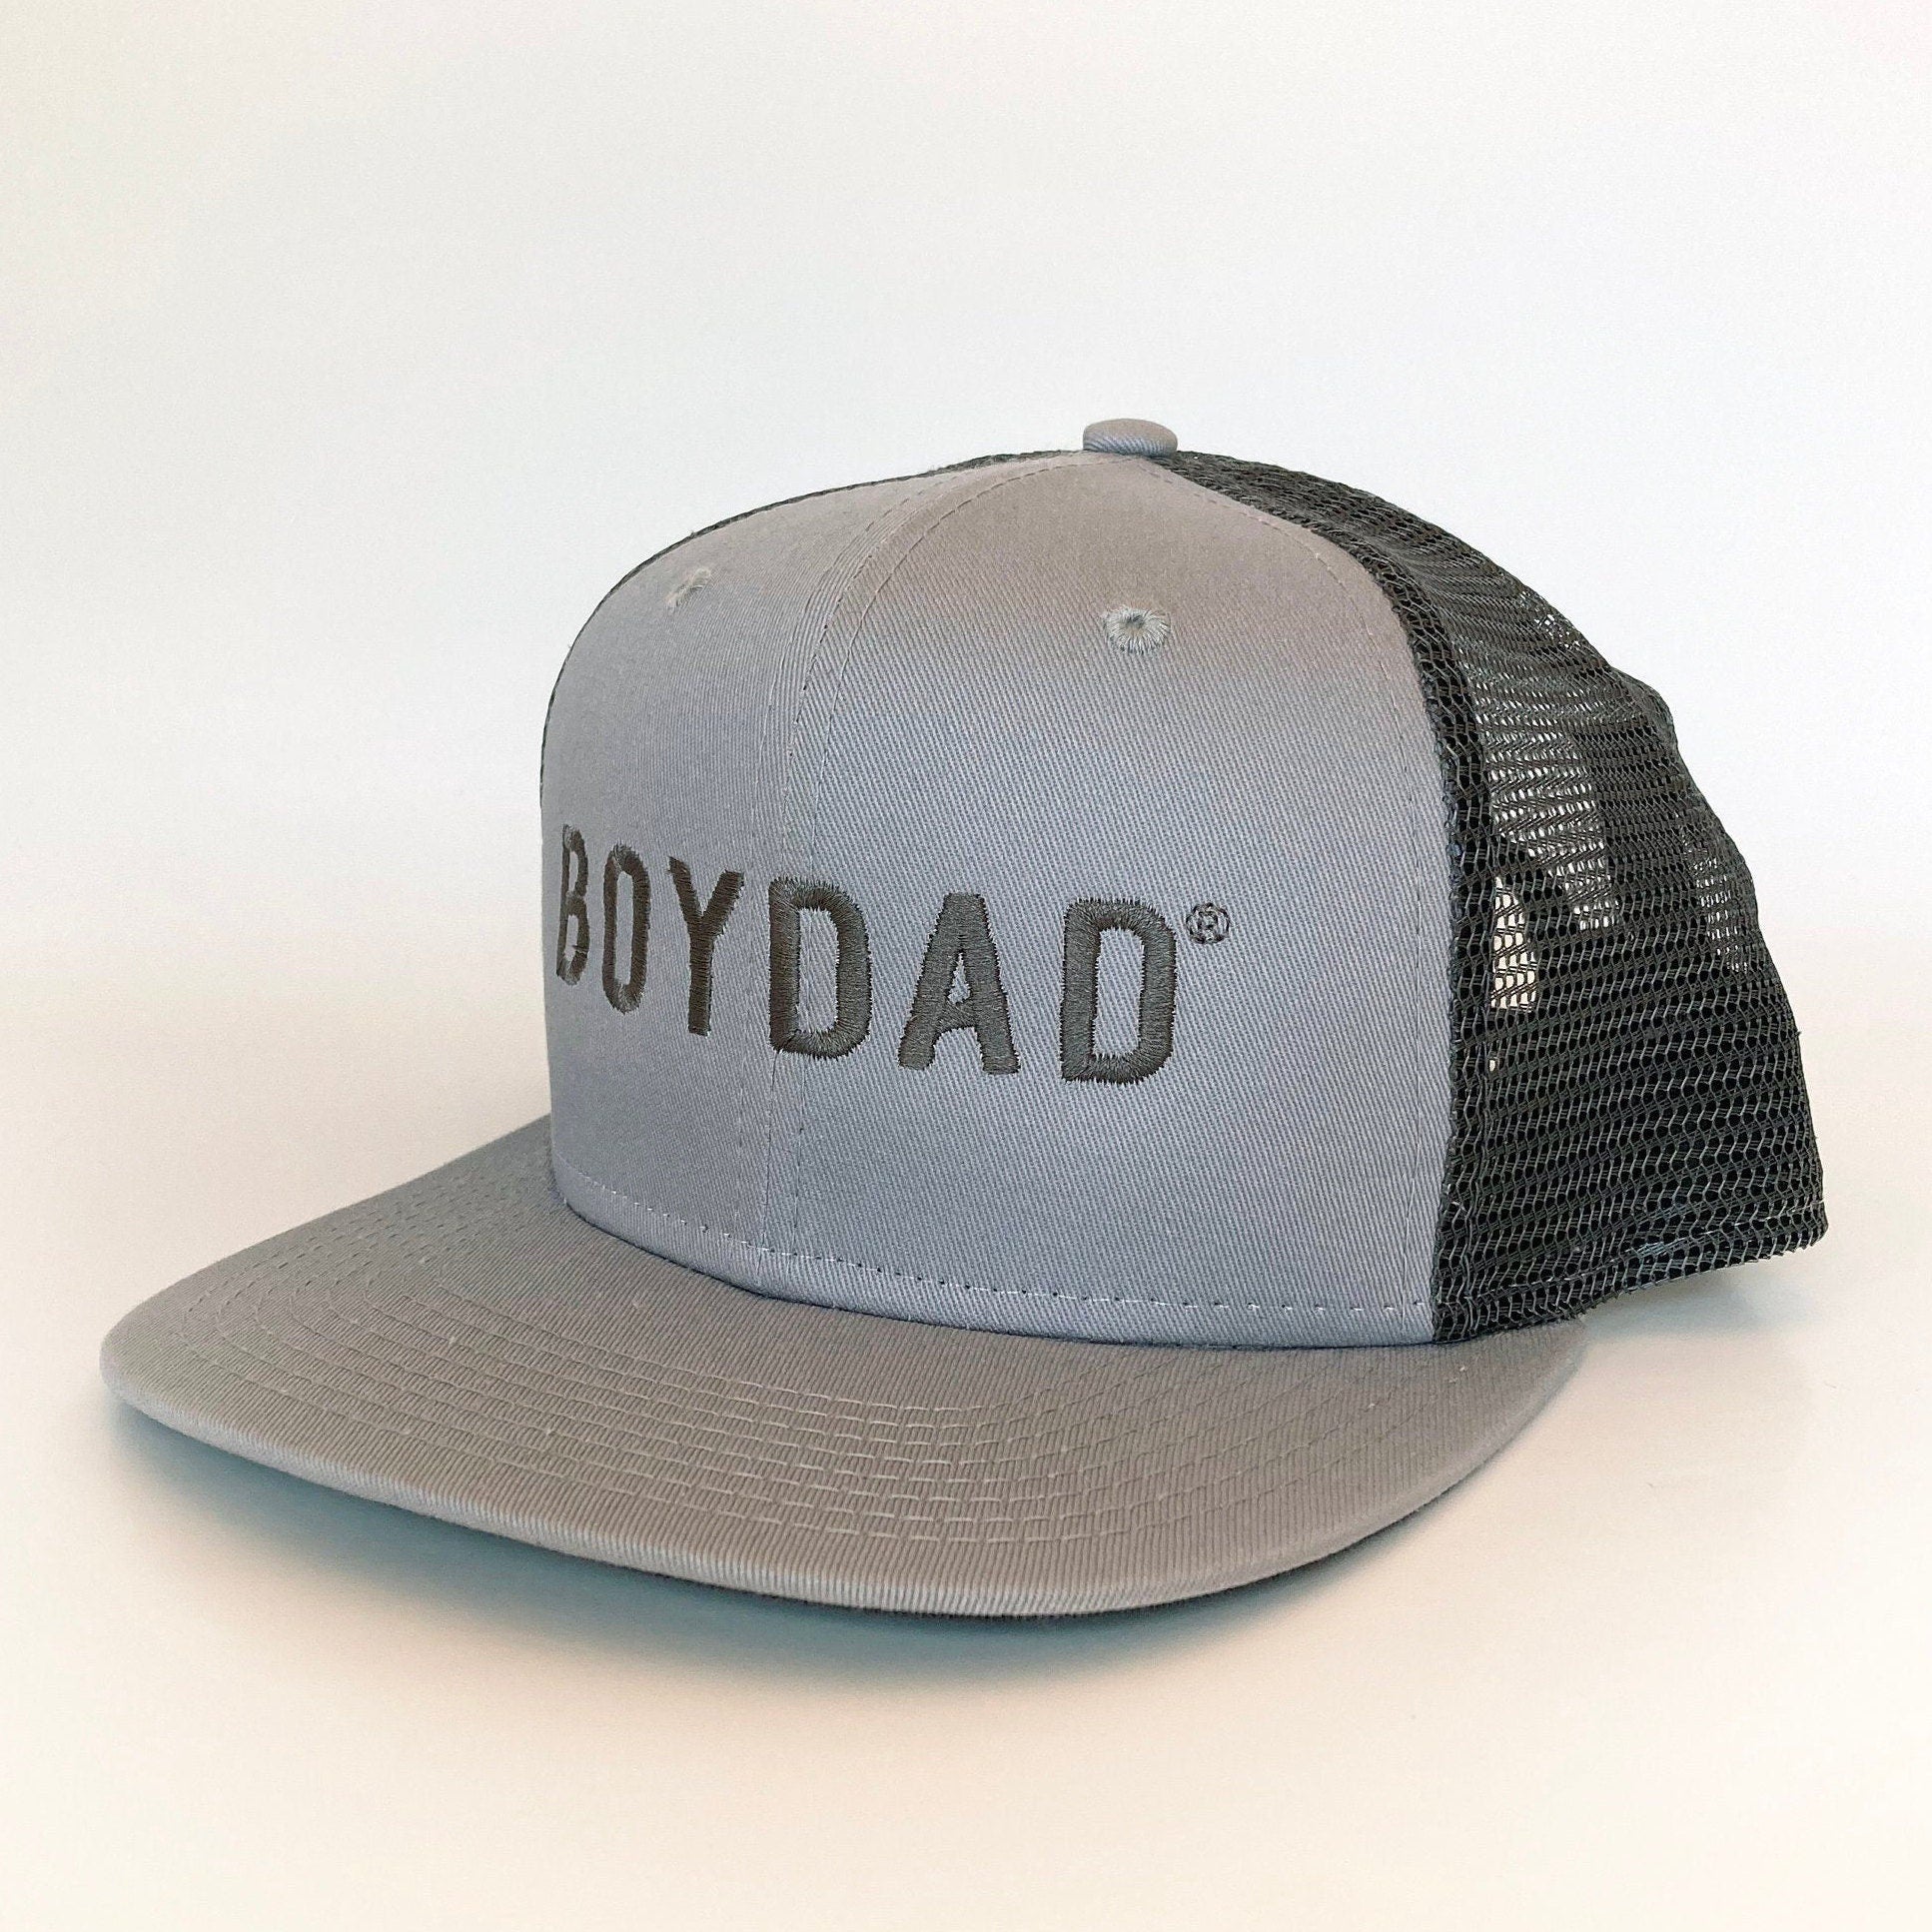 Boydad® Steel Grey Embroidered Trucker Hat